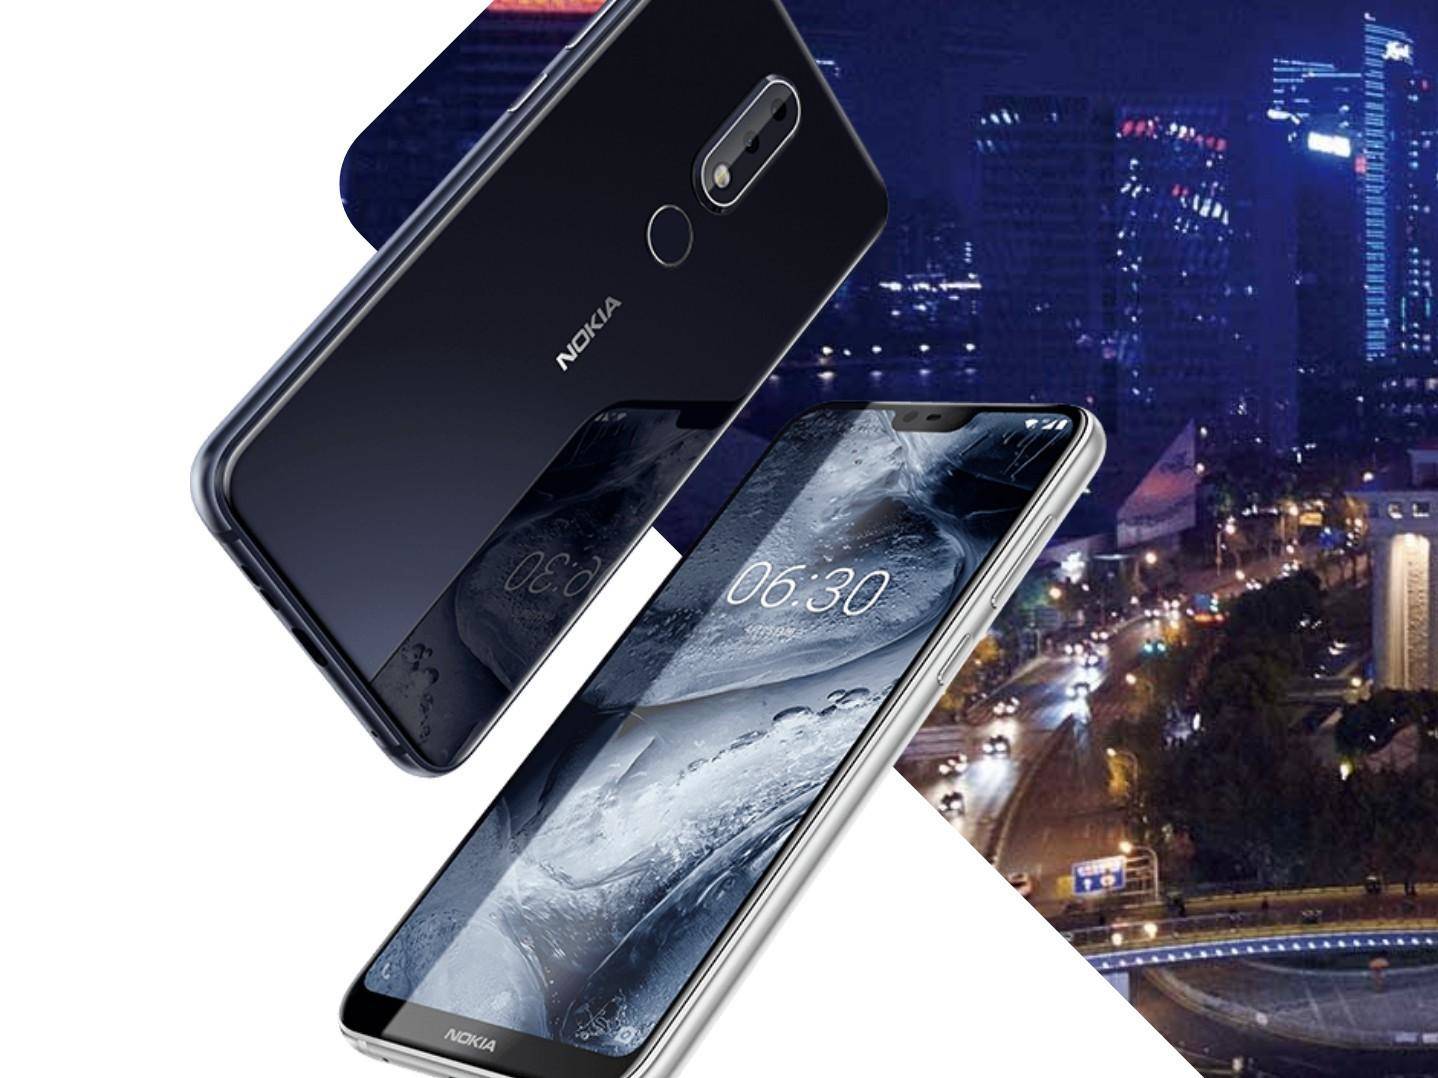 Nokia X6 स्मार्टफोन को सॉफ्टवेयर अपडेट मिला हैं, जानिये पूरी खबर